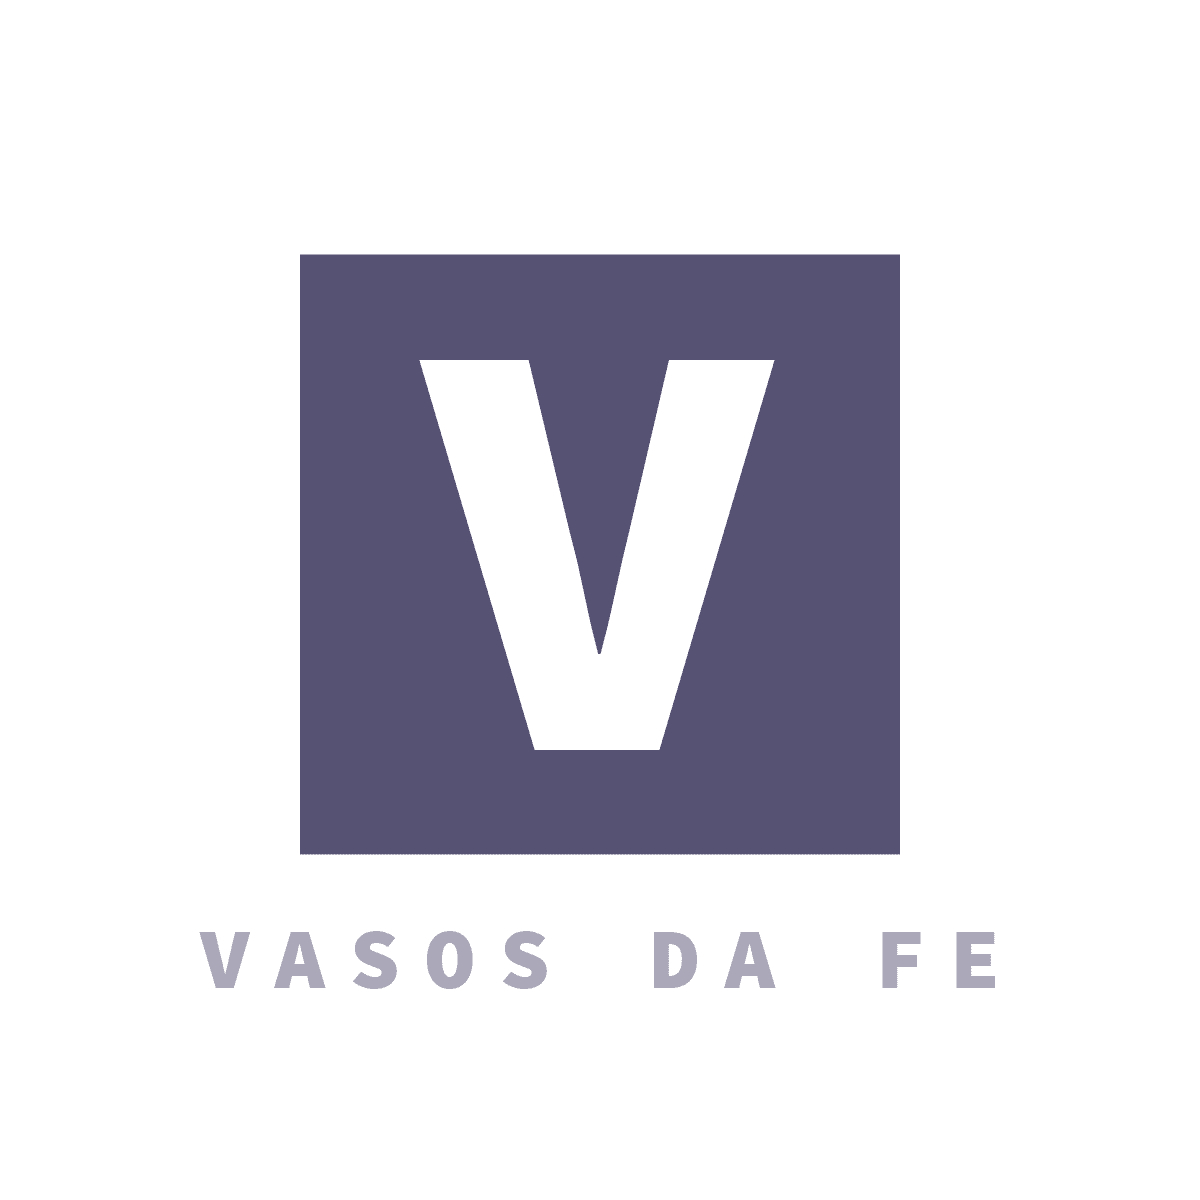 https://www.vasosdafe.com/wp-content/uploads/2019/05/logo-1.jpg